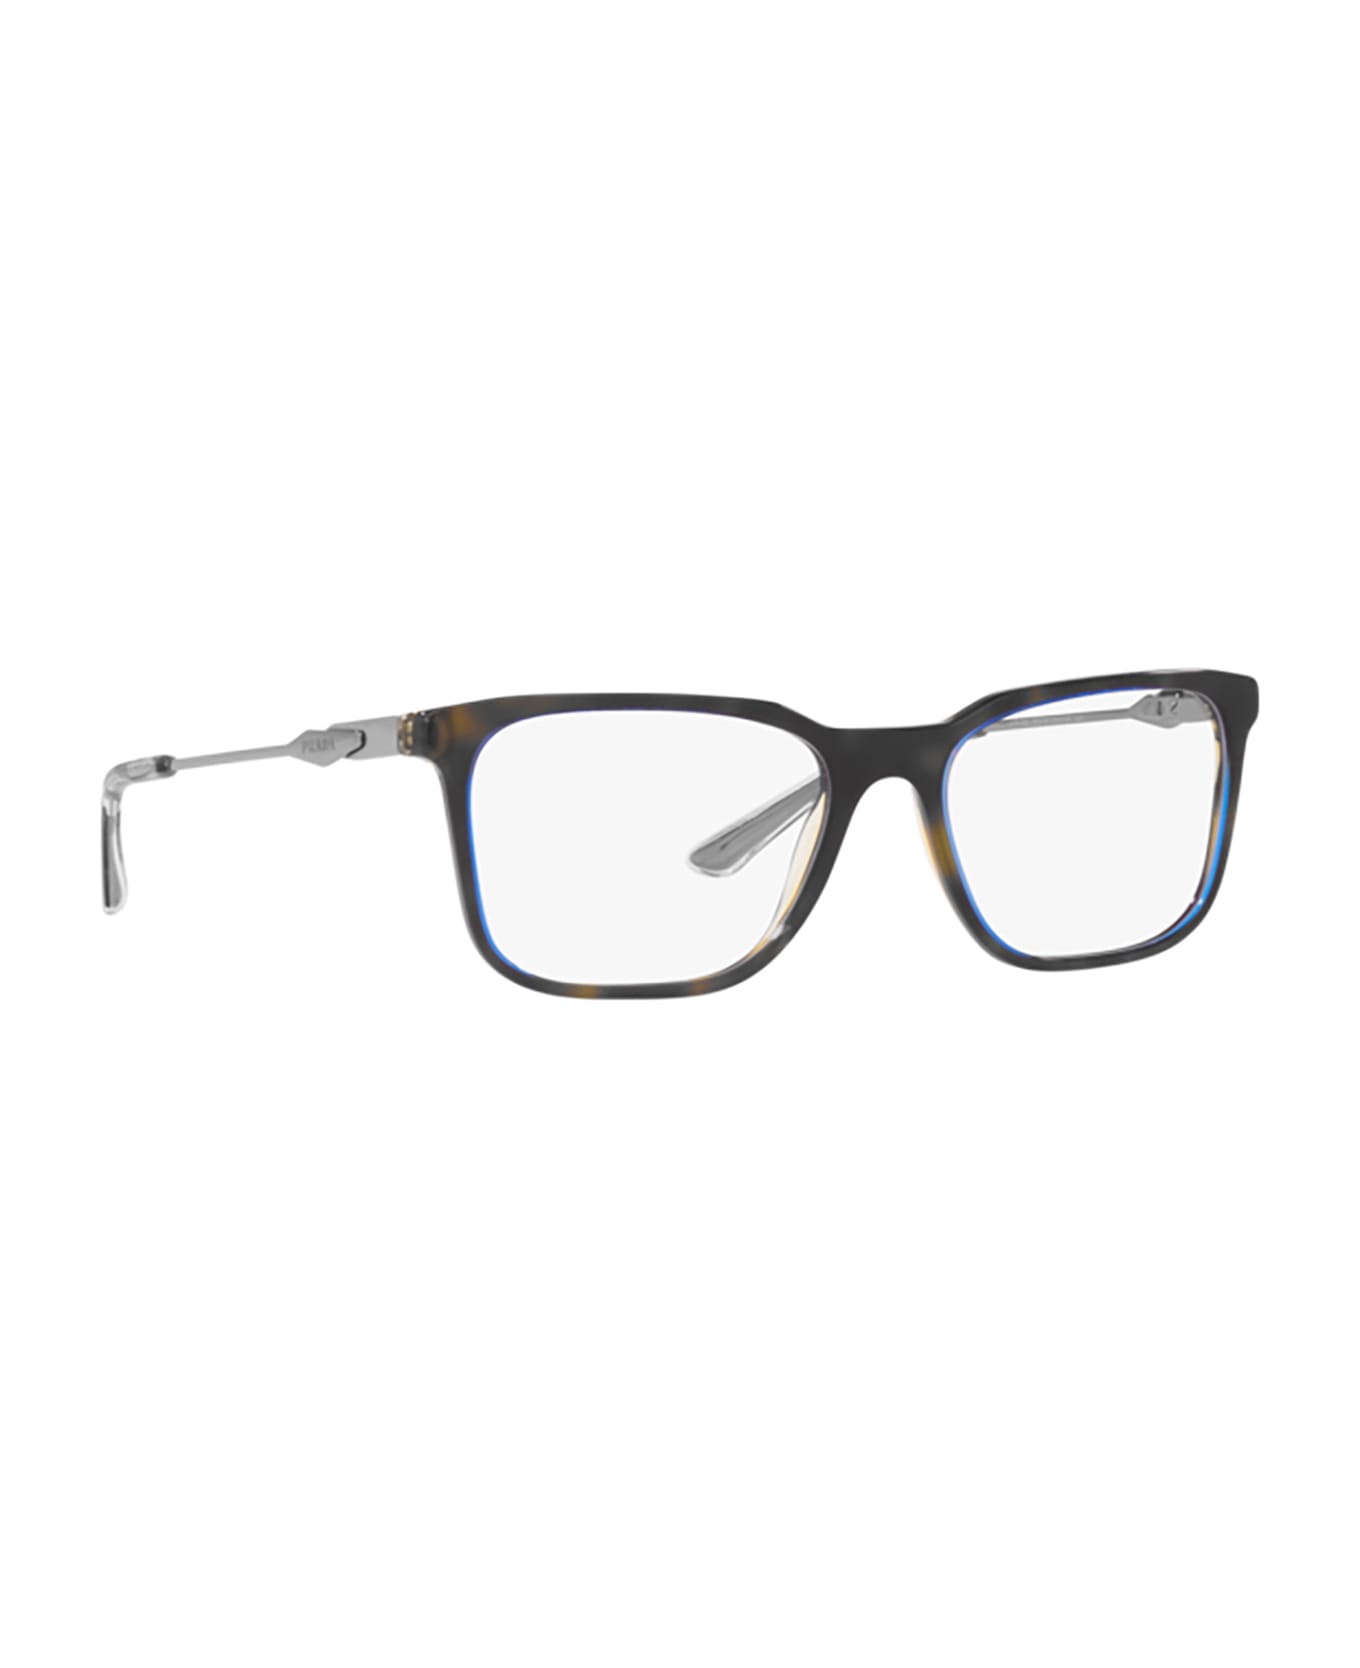 Prada Eyewear Pr 05zv Denim Tortoise Glasses - Denim Tortoise アイウェア